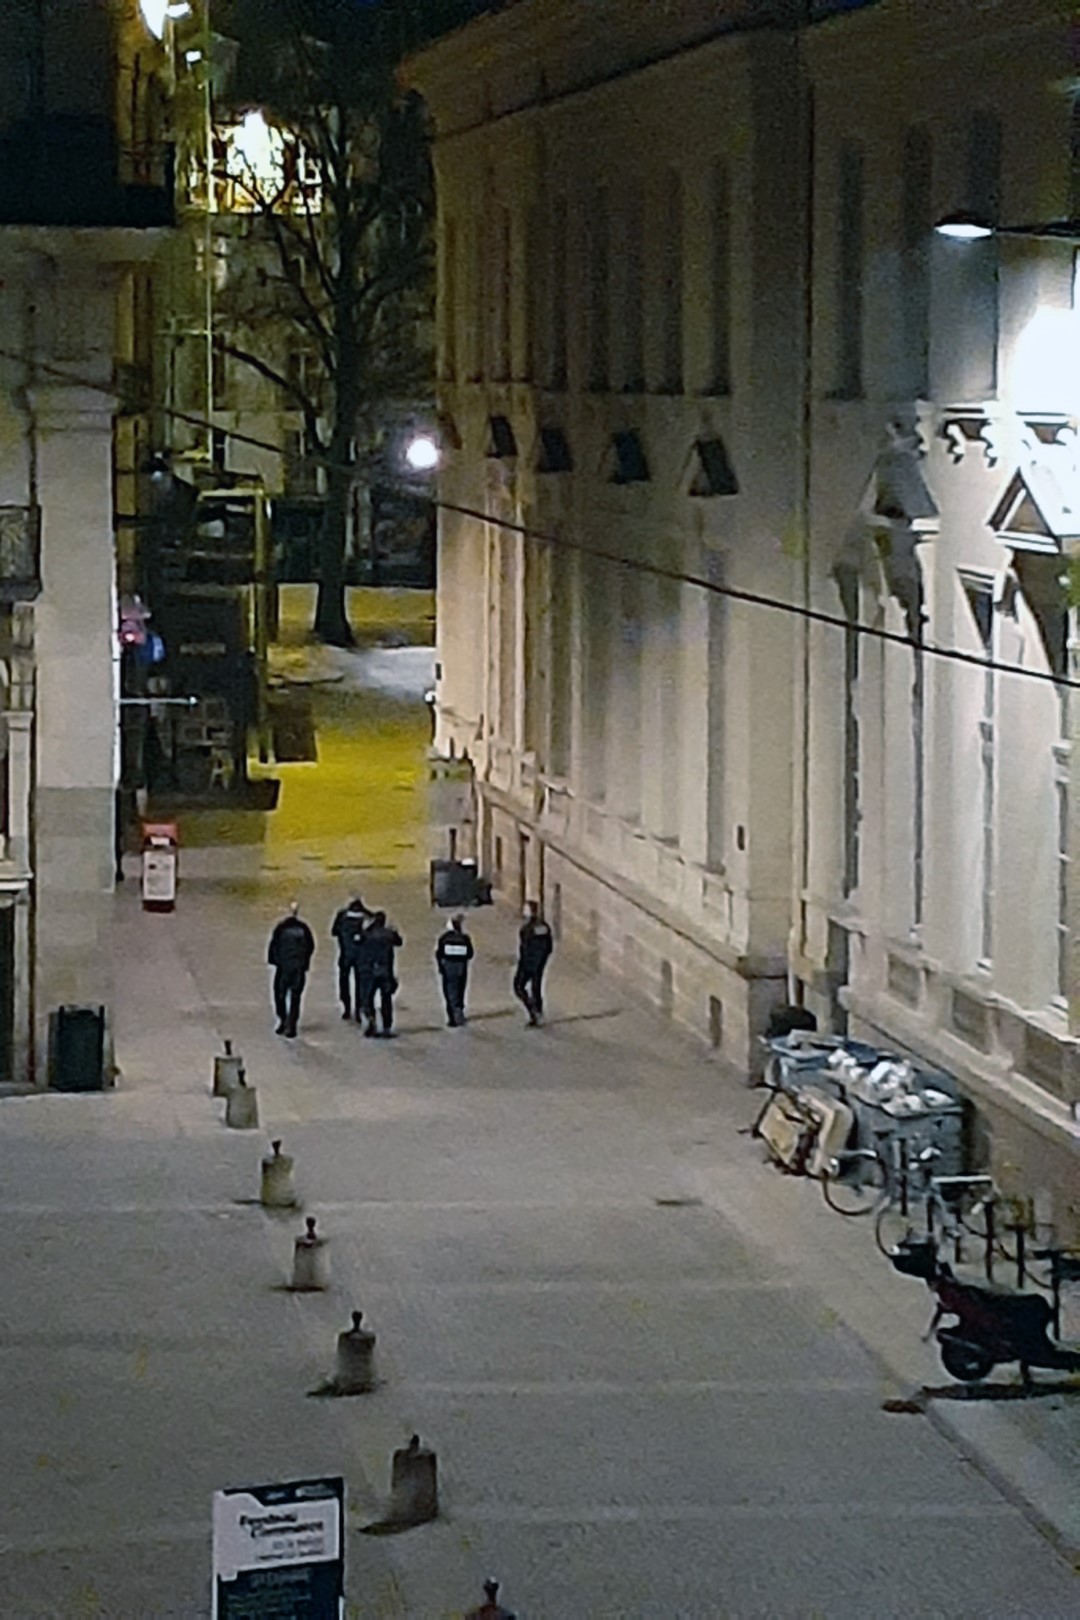 After the 7 p.m. curfew, place de la Bourse, Nantes